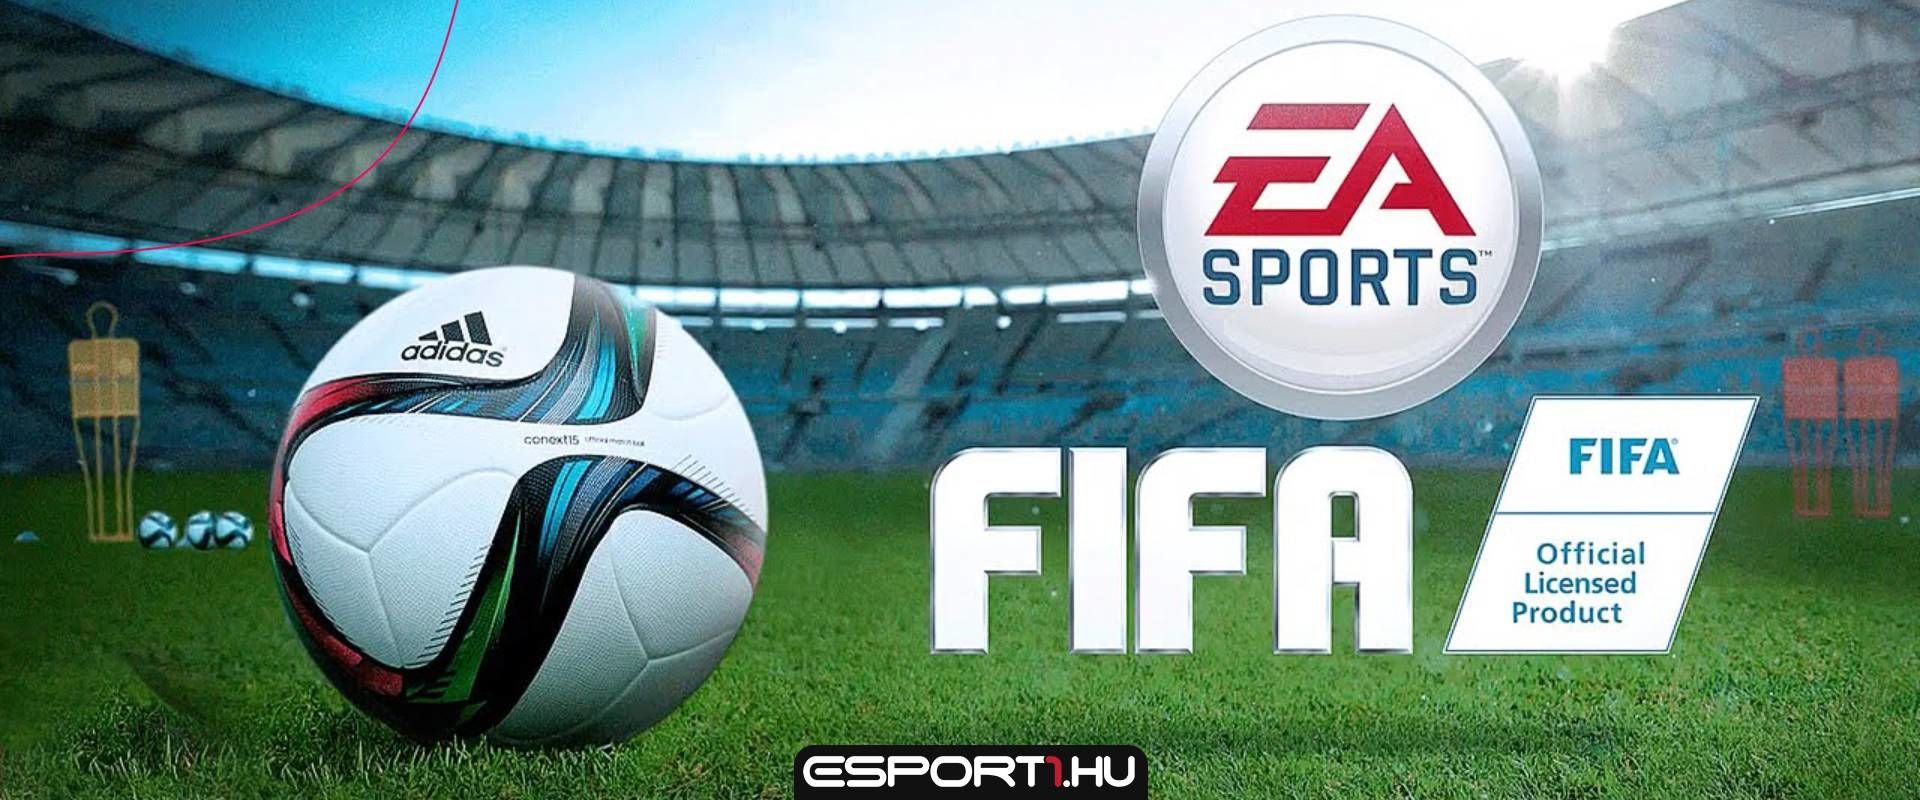 Az EA exkluzív szerzodést kötött az egyik legnagyobb klubbal a FIFA25-ig